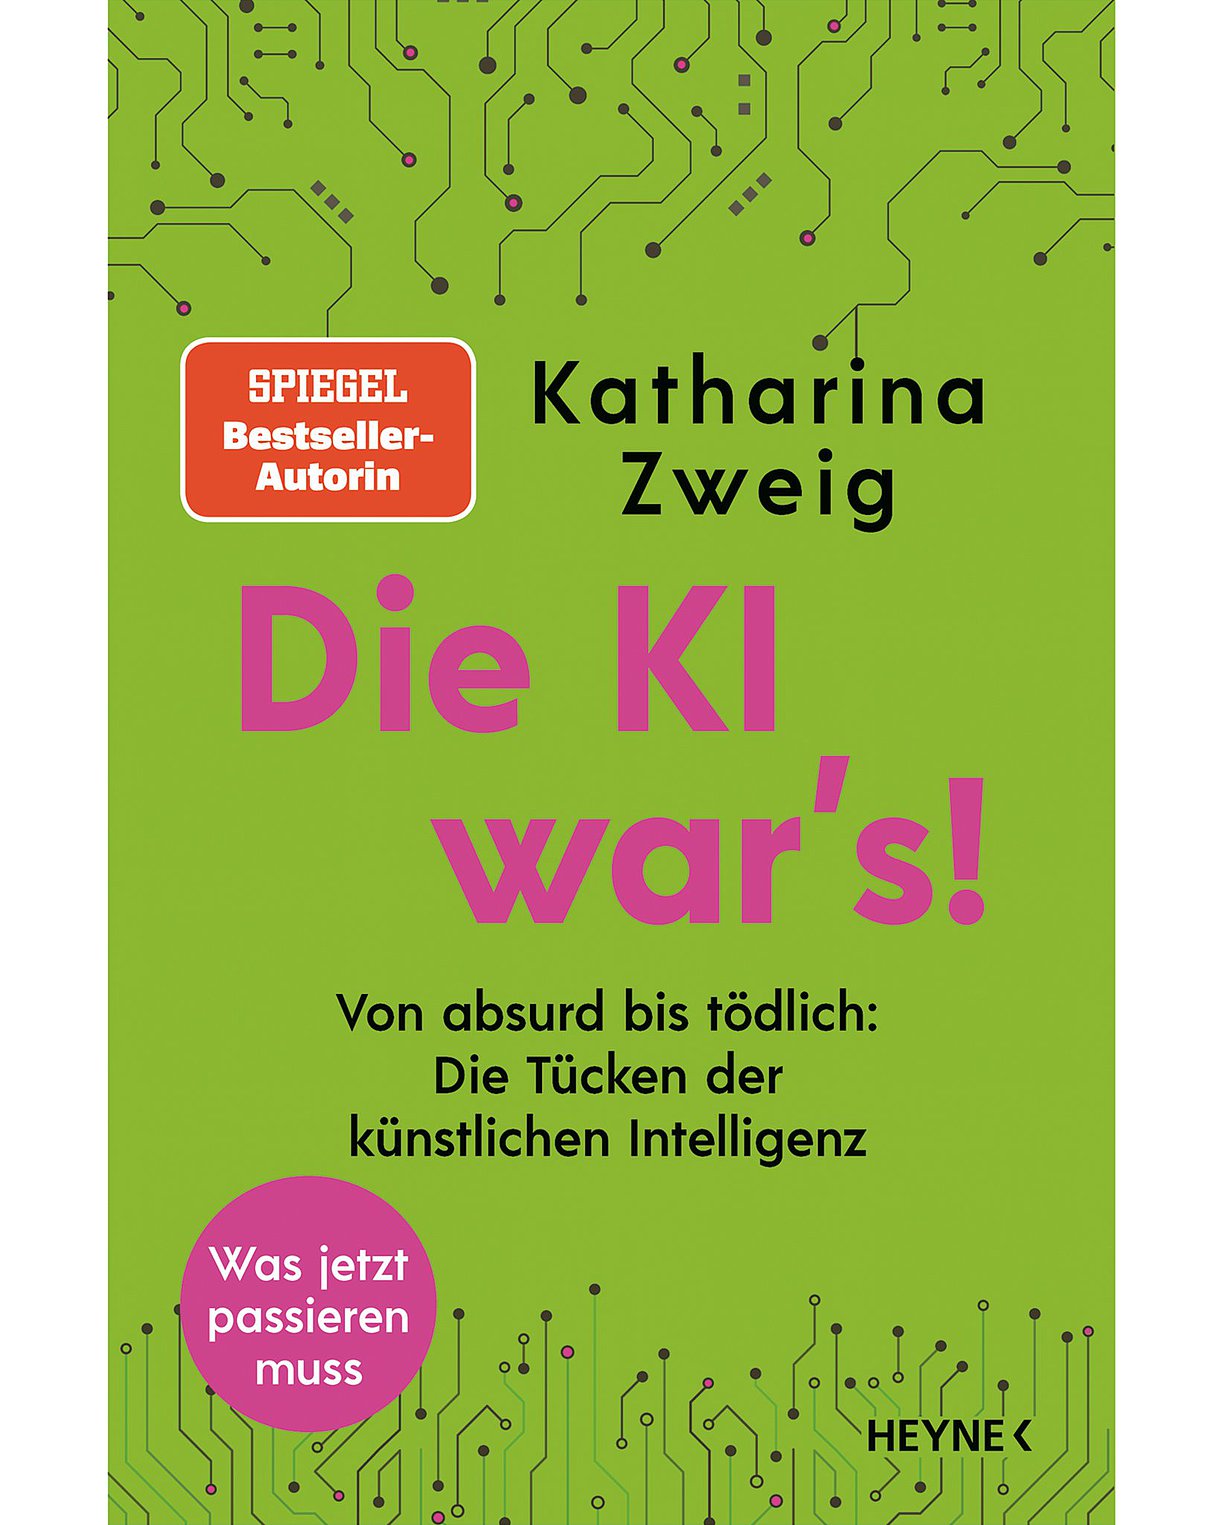 Foto: Buchcover des Buches: Katharina Zweig: Die KI war’s!: Von absurd bis tödlich: Die Tücken der künstlichen Intelligenz. 